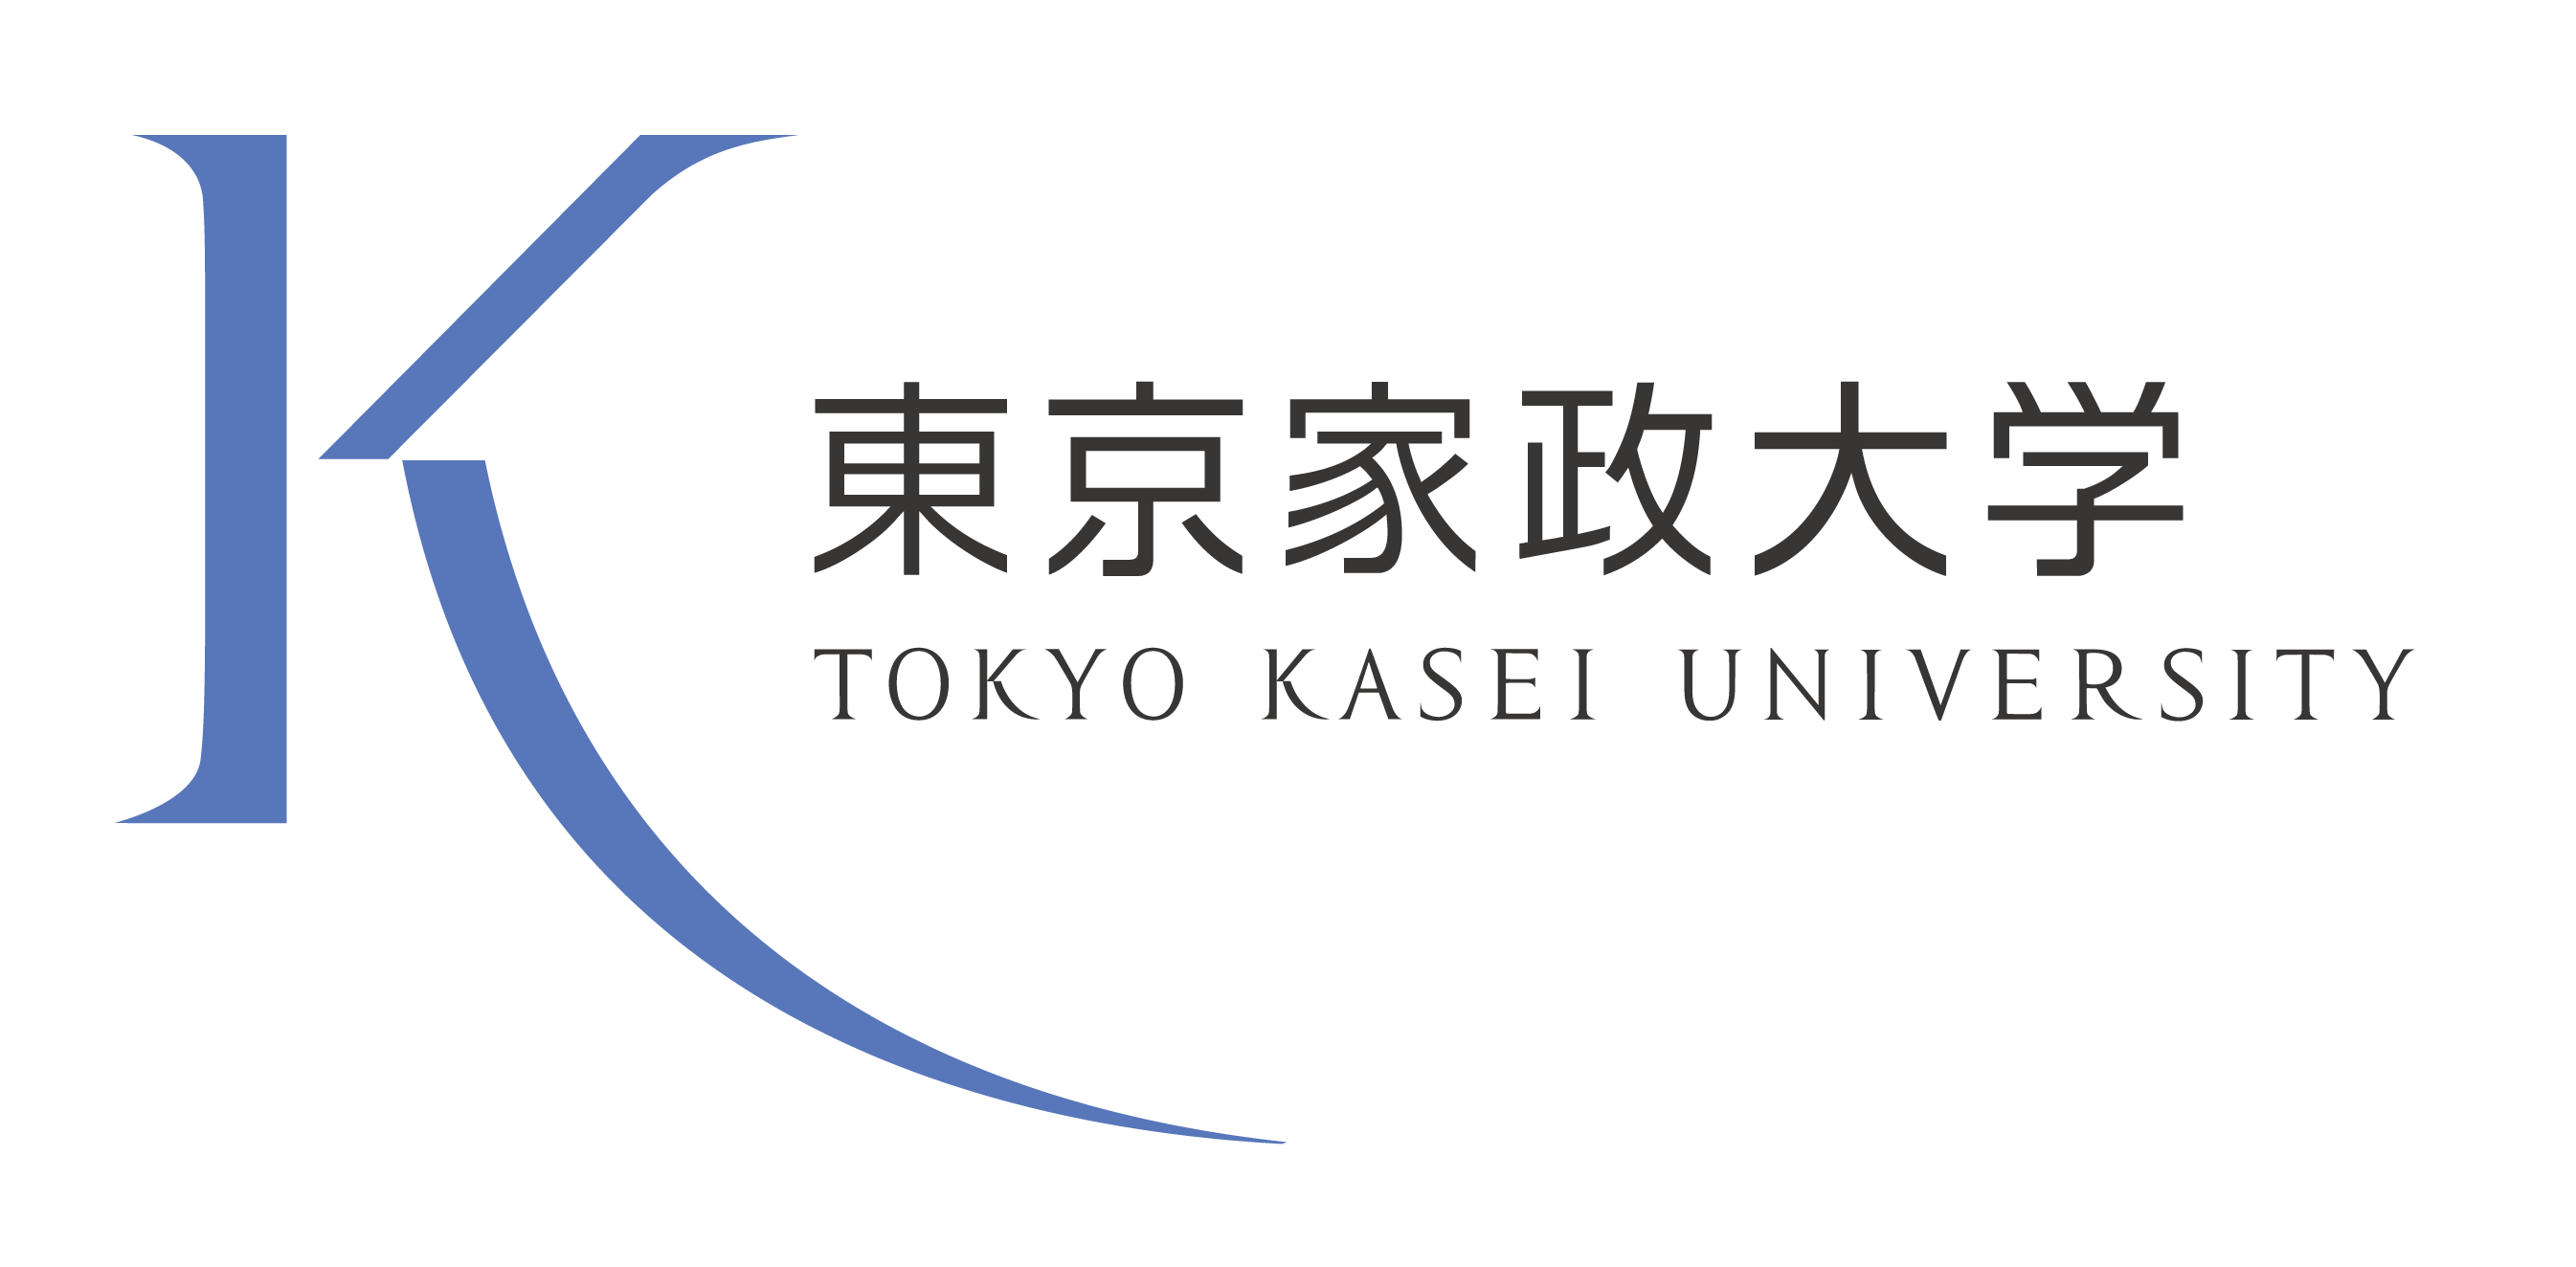 Tokyo Kasei University Japan